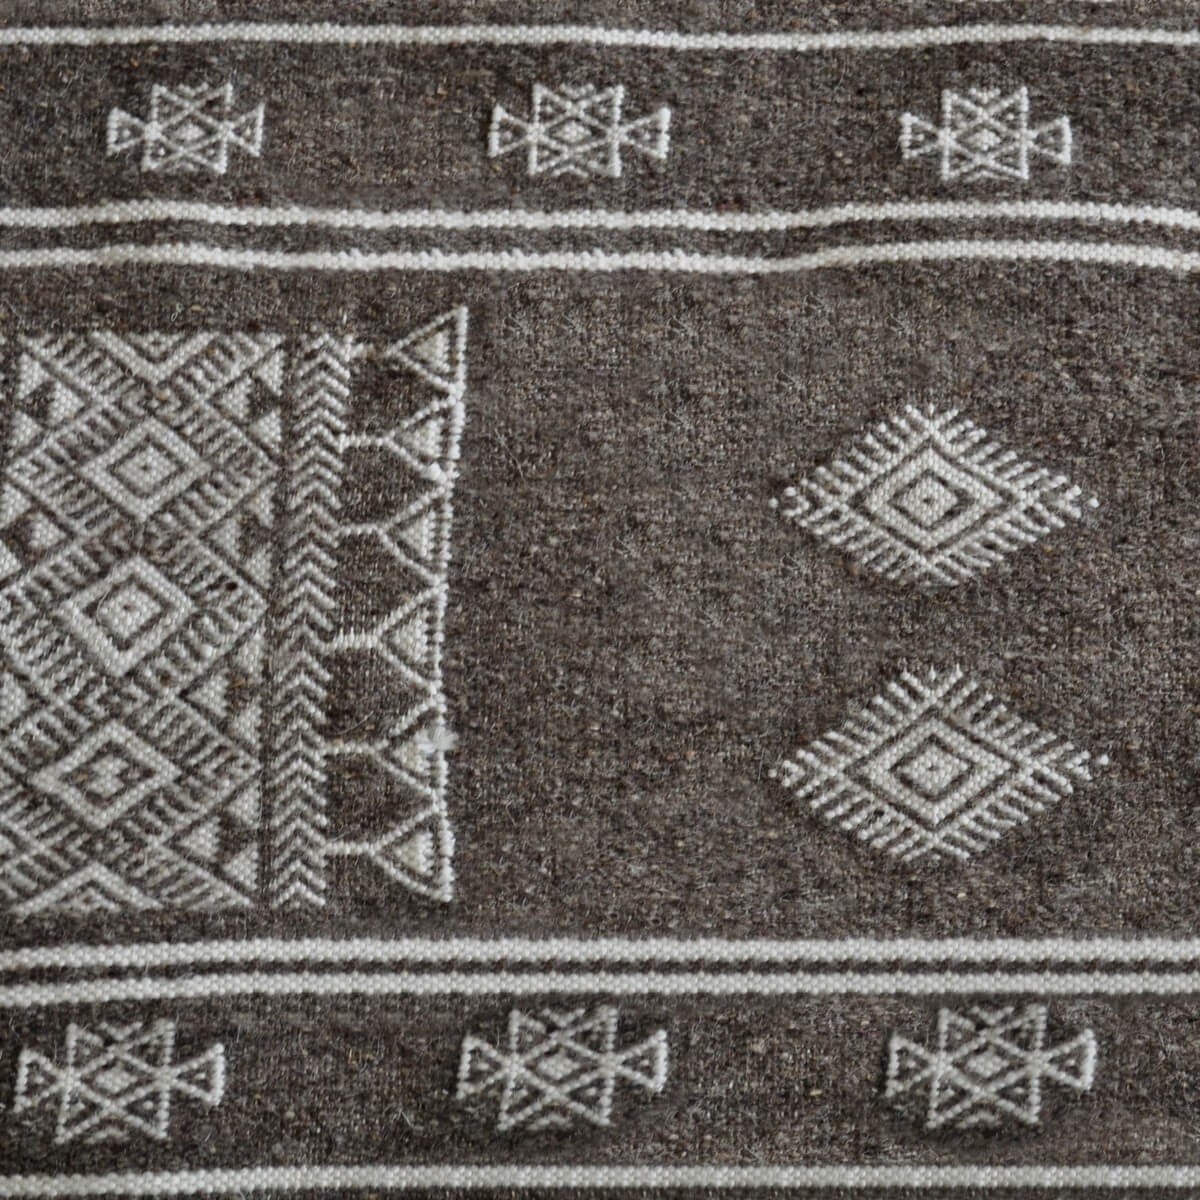 Berber Teppich Teppich Kelim Mizza 65x115  Grau/Weiß (Handgewebt, Wolle, Tunesien) Tunesischer Kelim-Teppich im marokkanischen S